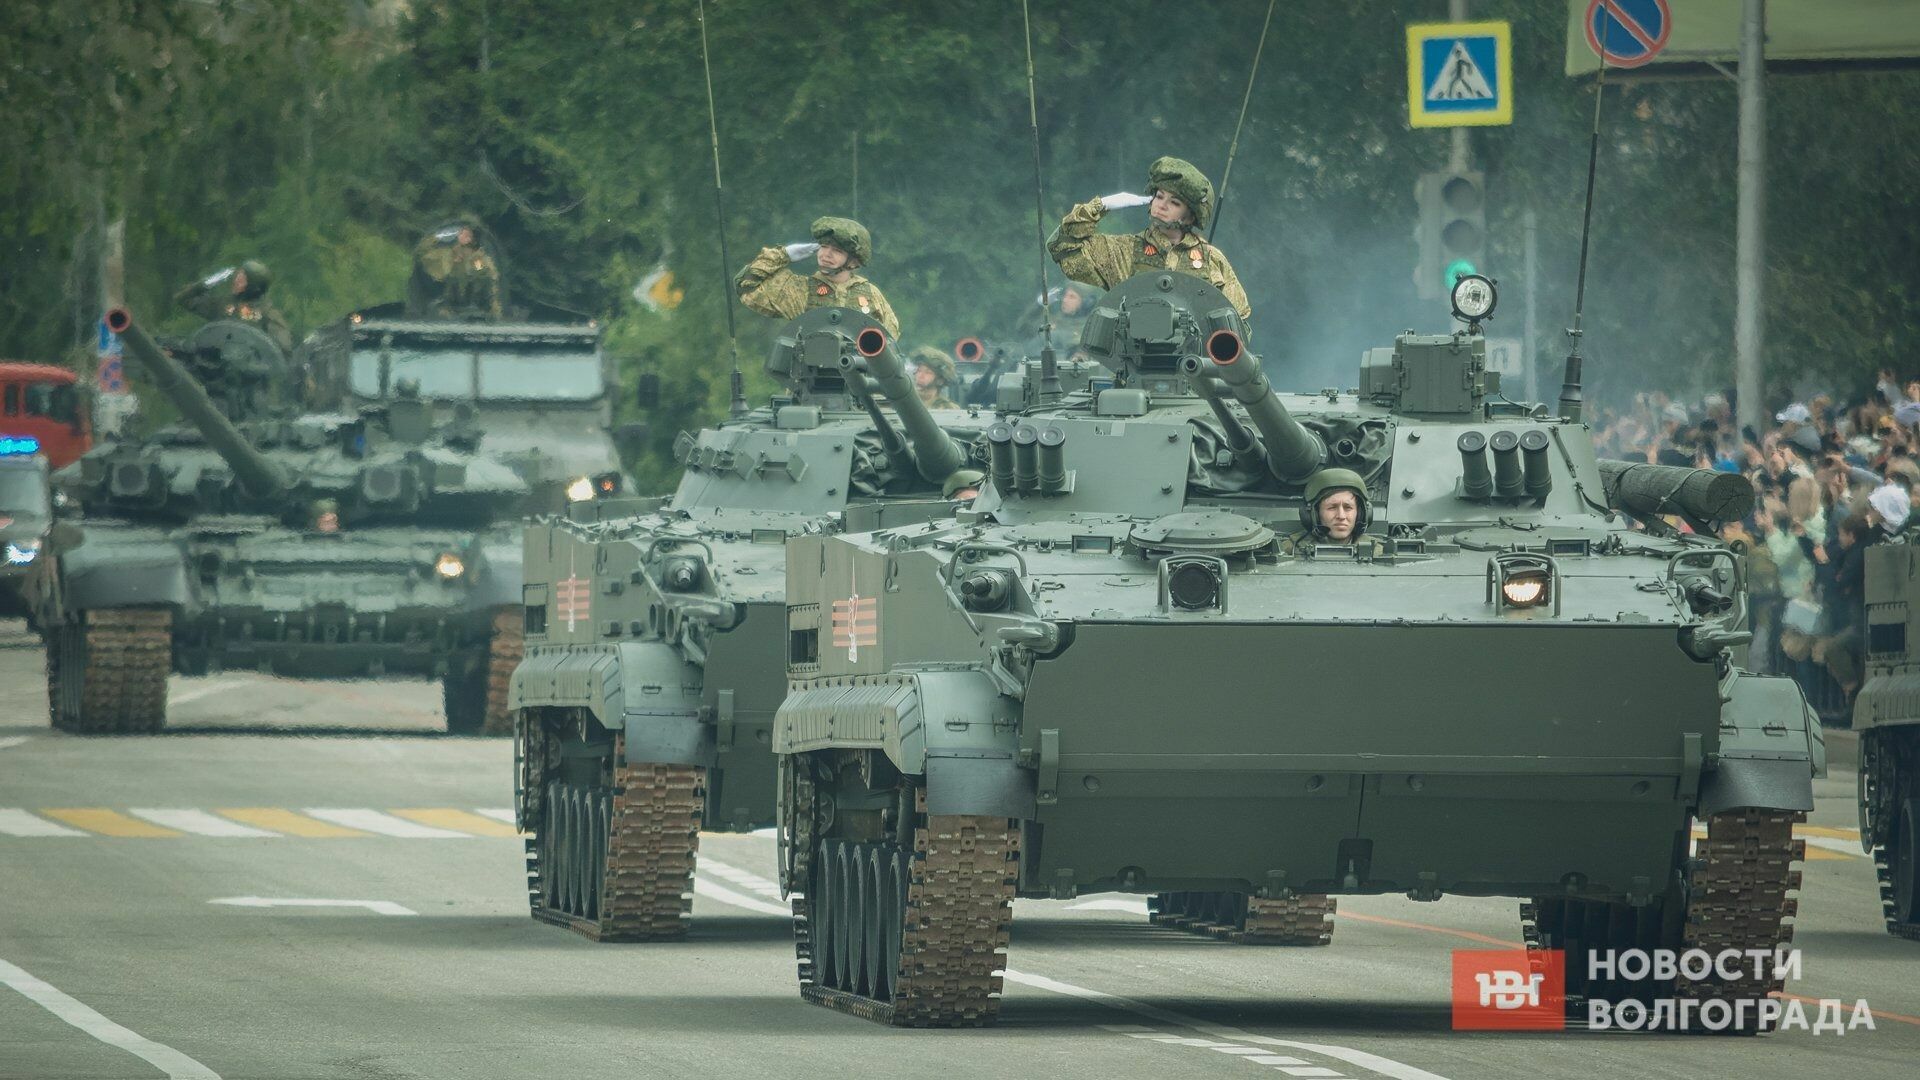 Для тех, кто в танке: девушек на бронетехнике в Волгограде ещё не видели